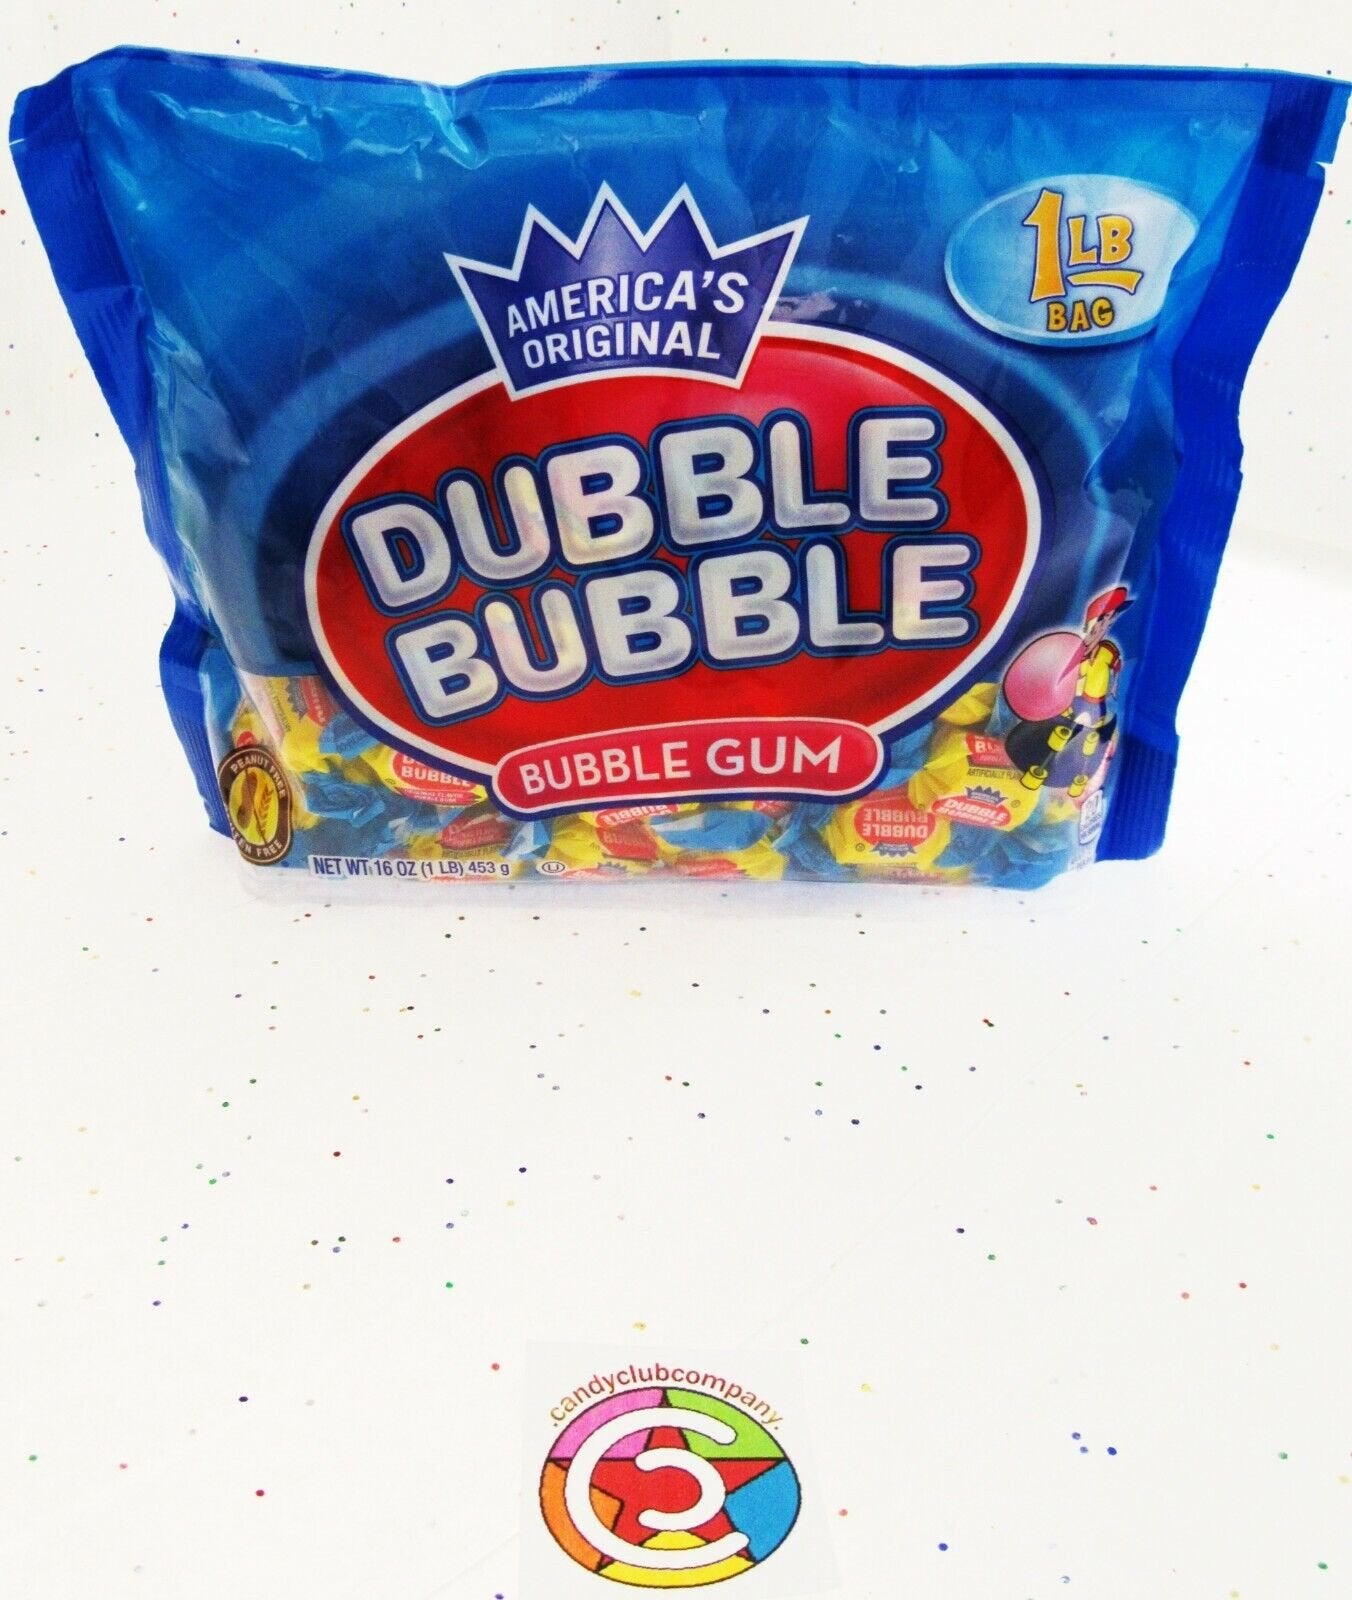 Dubble Bubble Original 16oz Double Bubble Gum Chewing ~ one pound bag